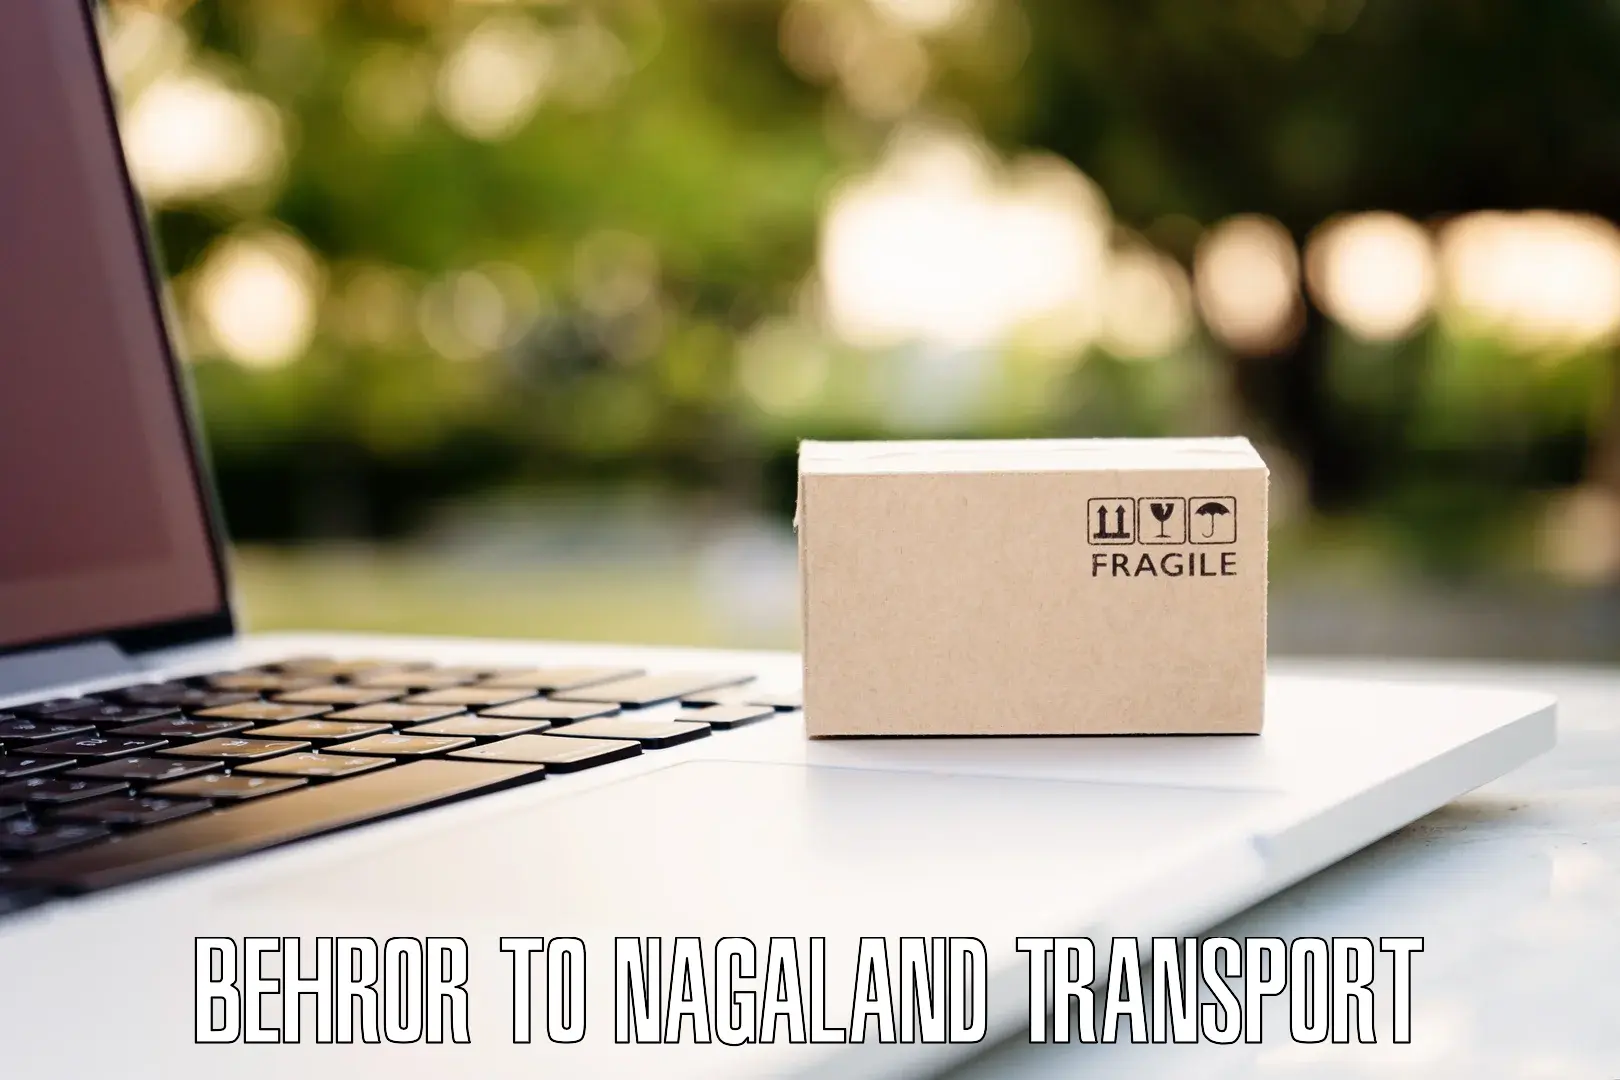 Cargo transport services Behror to Nagaland